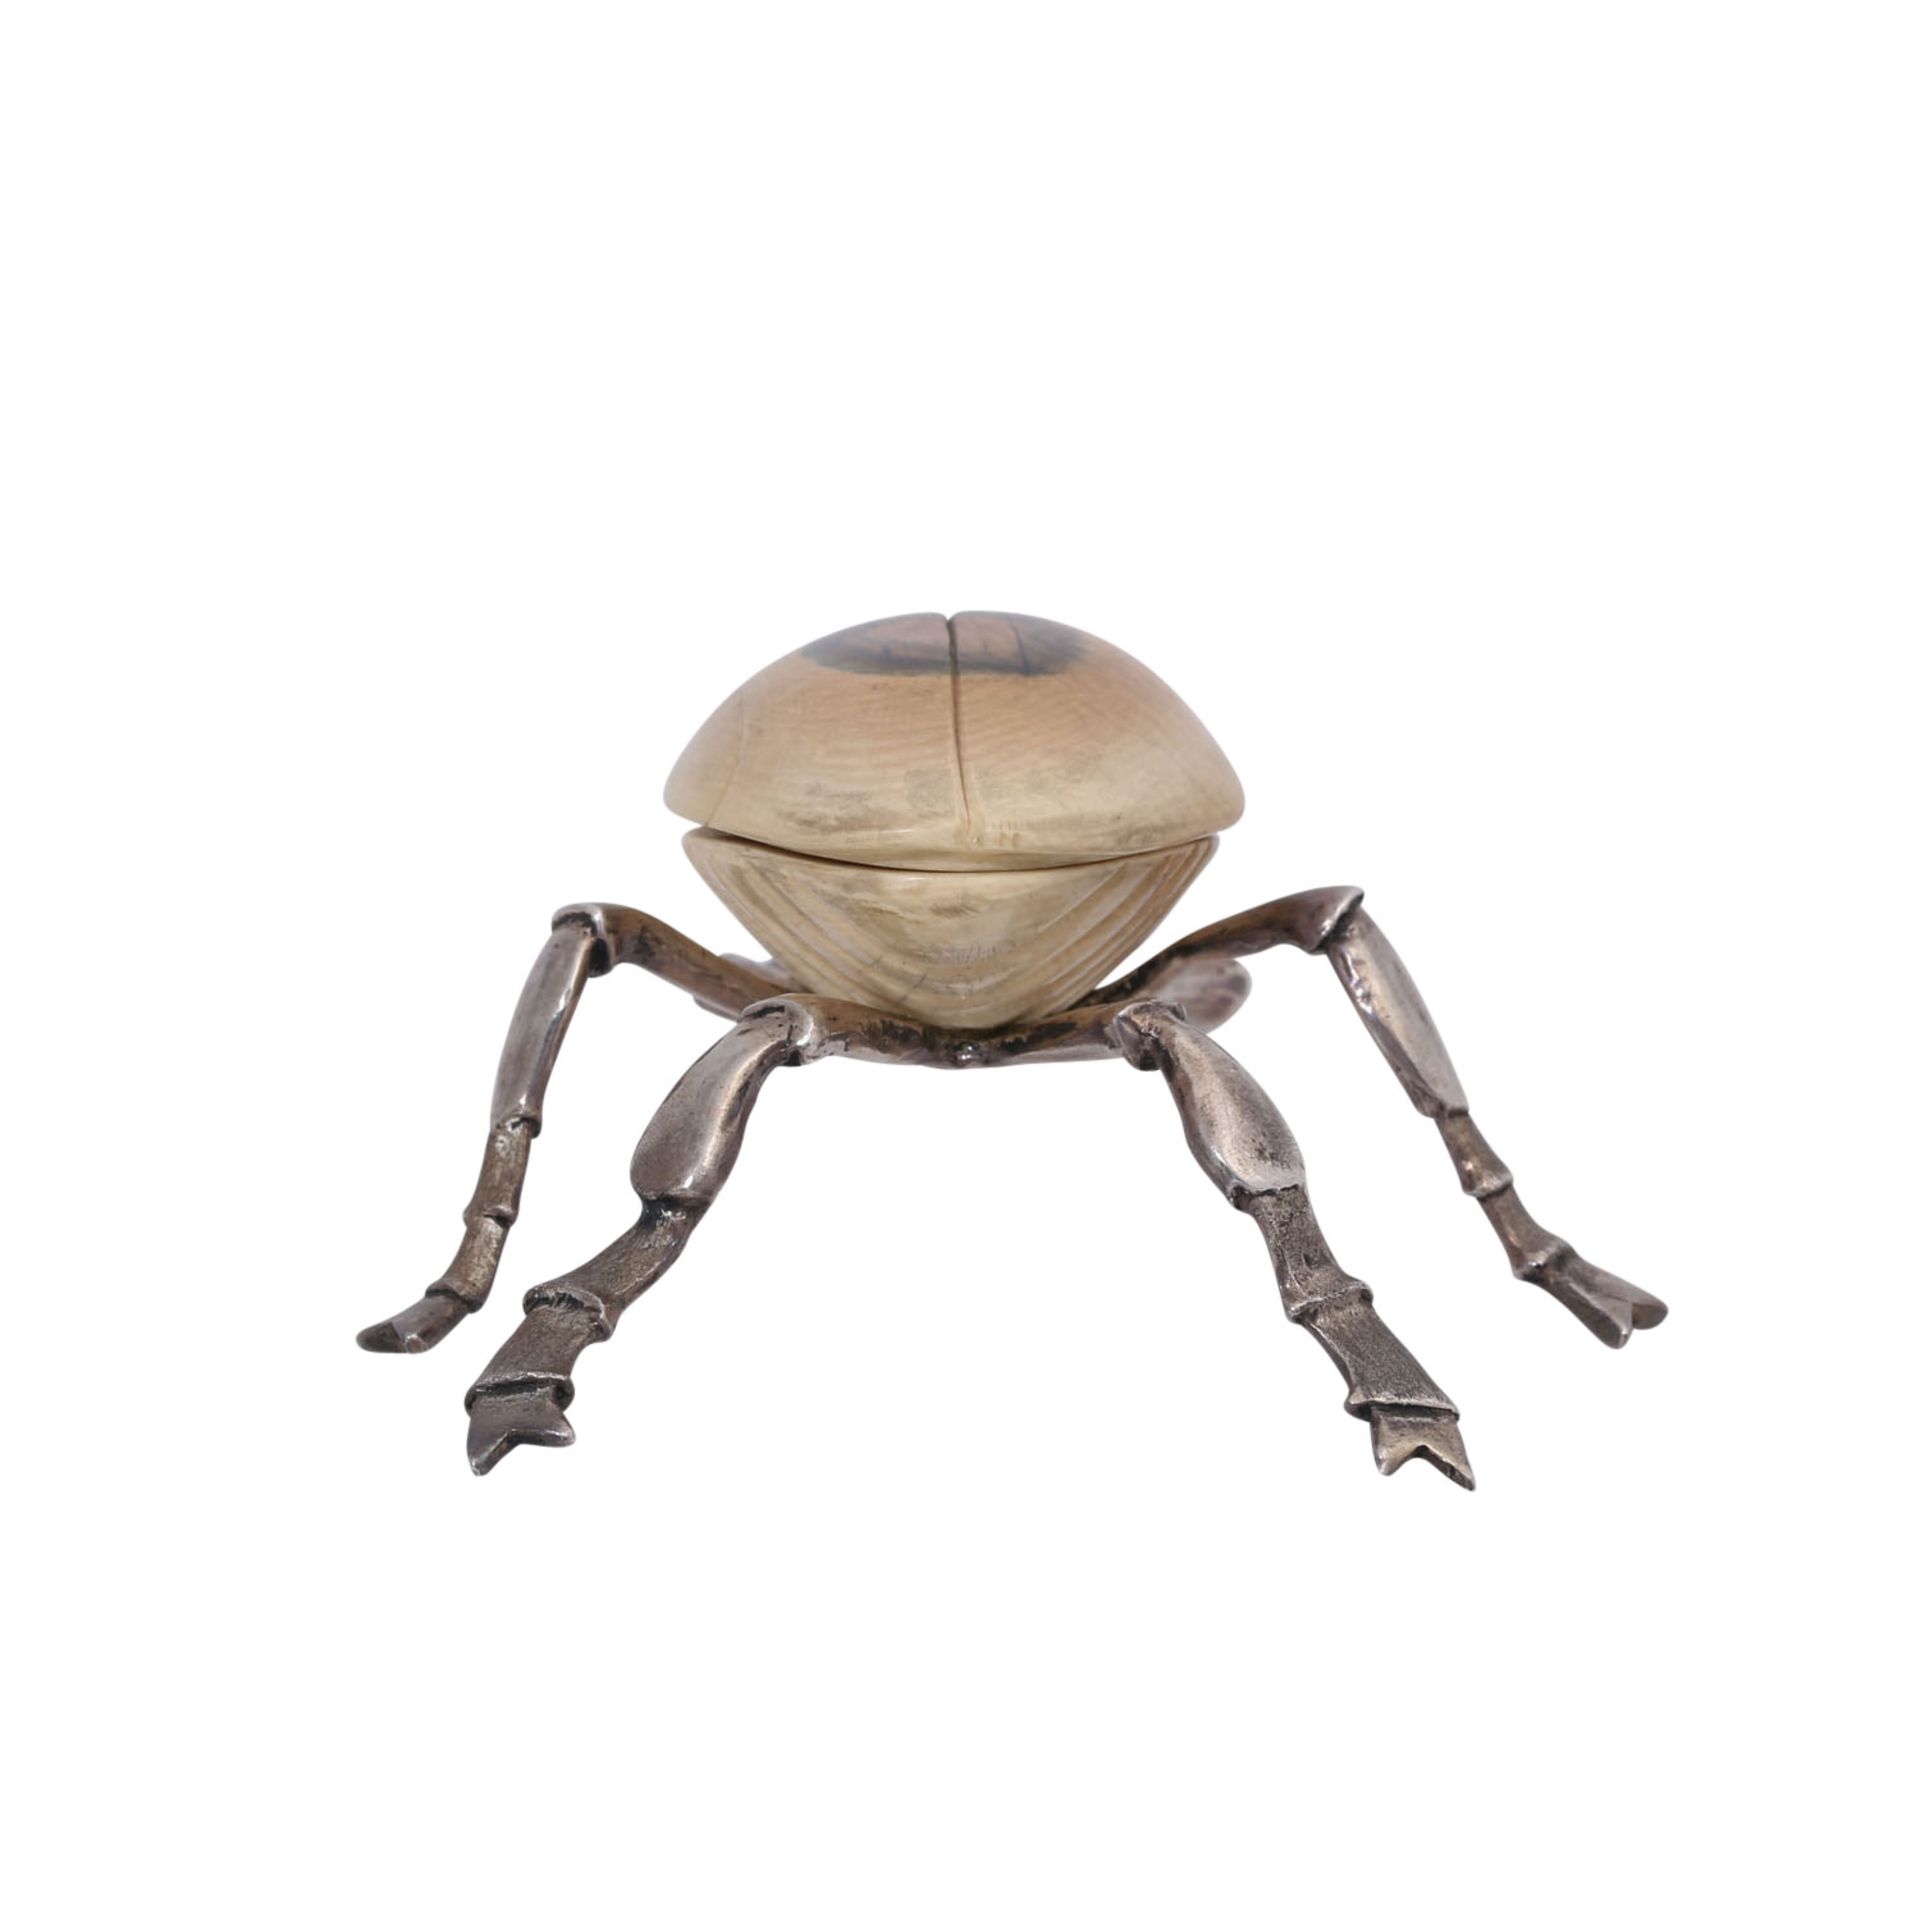 Objekt "Käfer" aus fossilem Bein und Silber, - Bild 5 aus 8